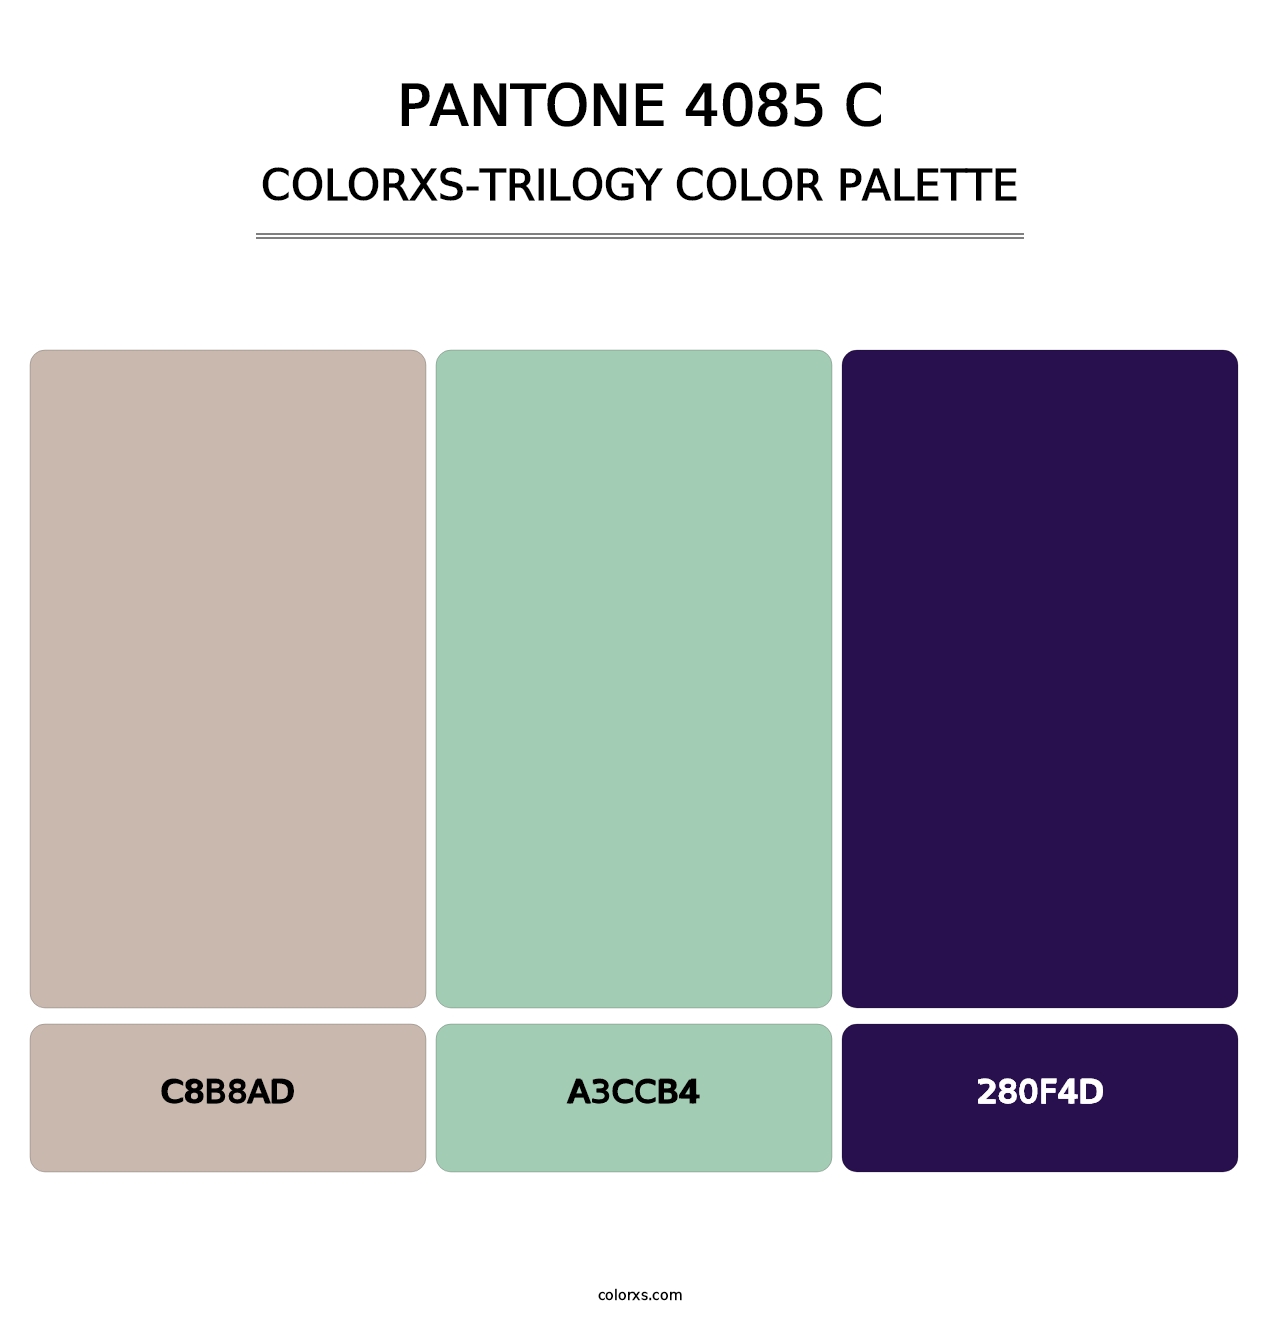 PANTONE 4085 C - Colorxs Trilogy Palette